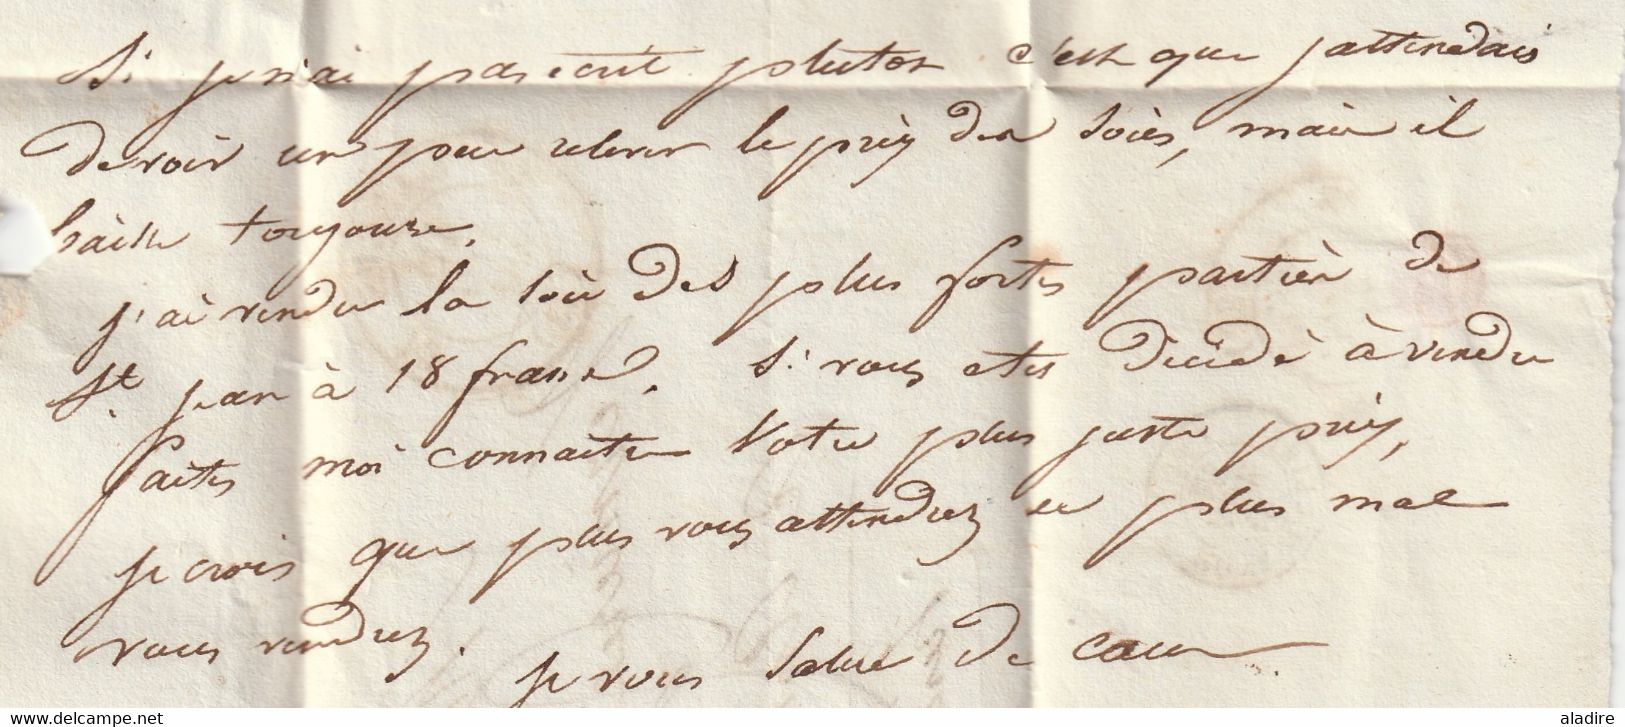 1842 - D4 Grand cachet à date type 12 simple fleuron sur Lettre avec texte de Ganges, Hérault vers Aniane - taxe 3 décim